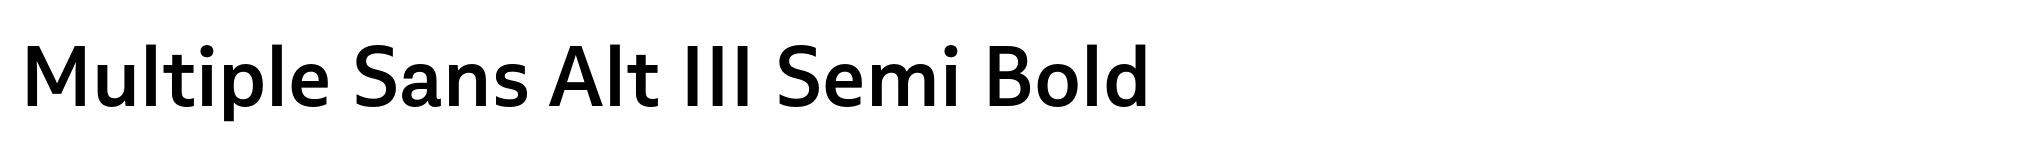 Multiple Sans Alt III Semi Bold image